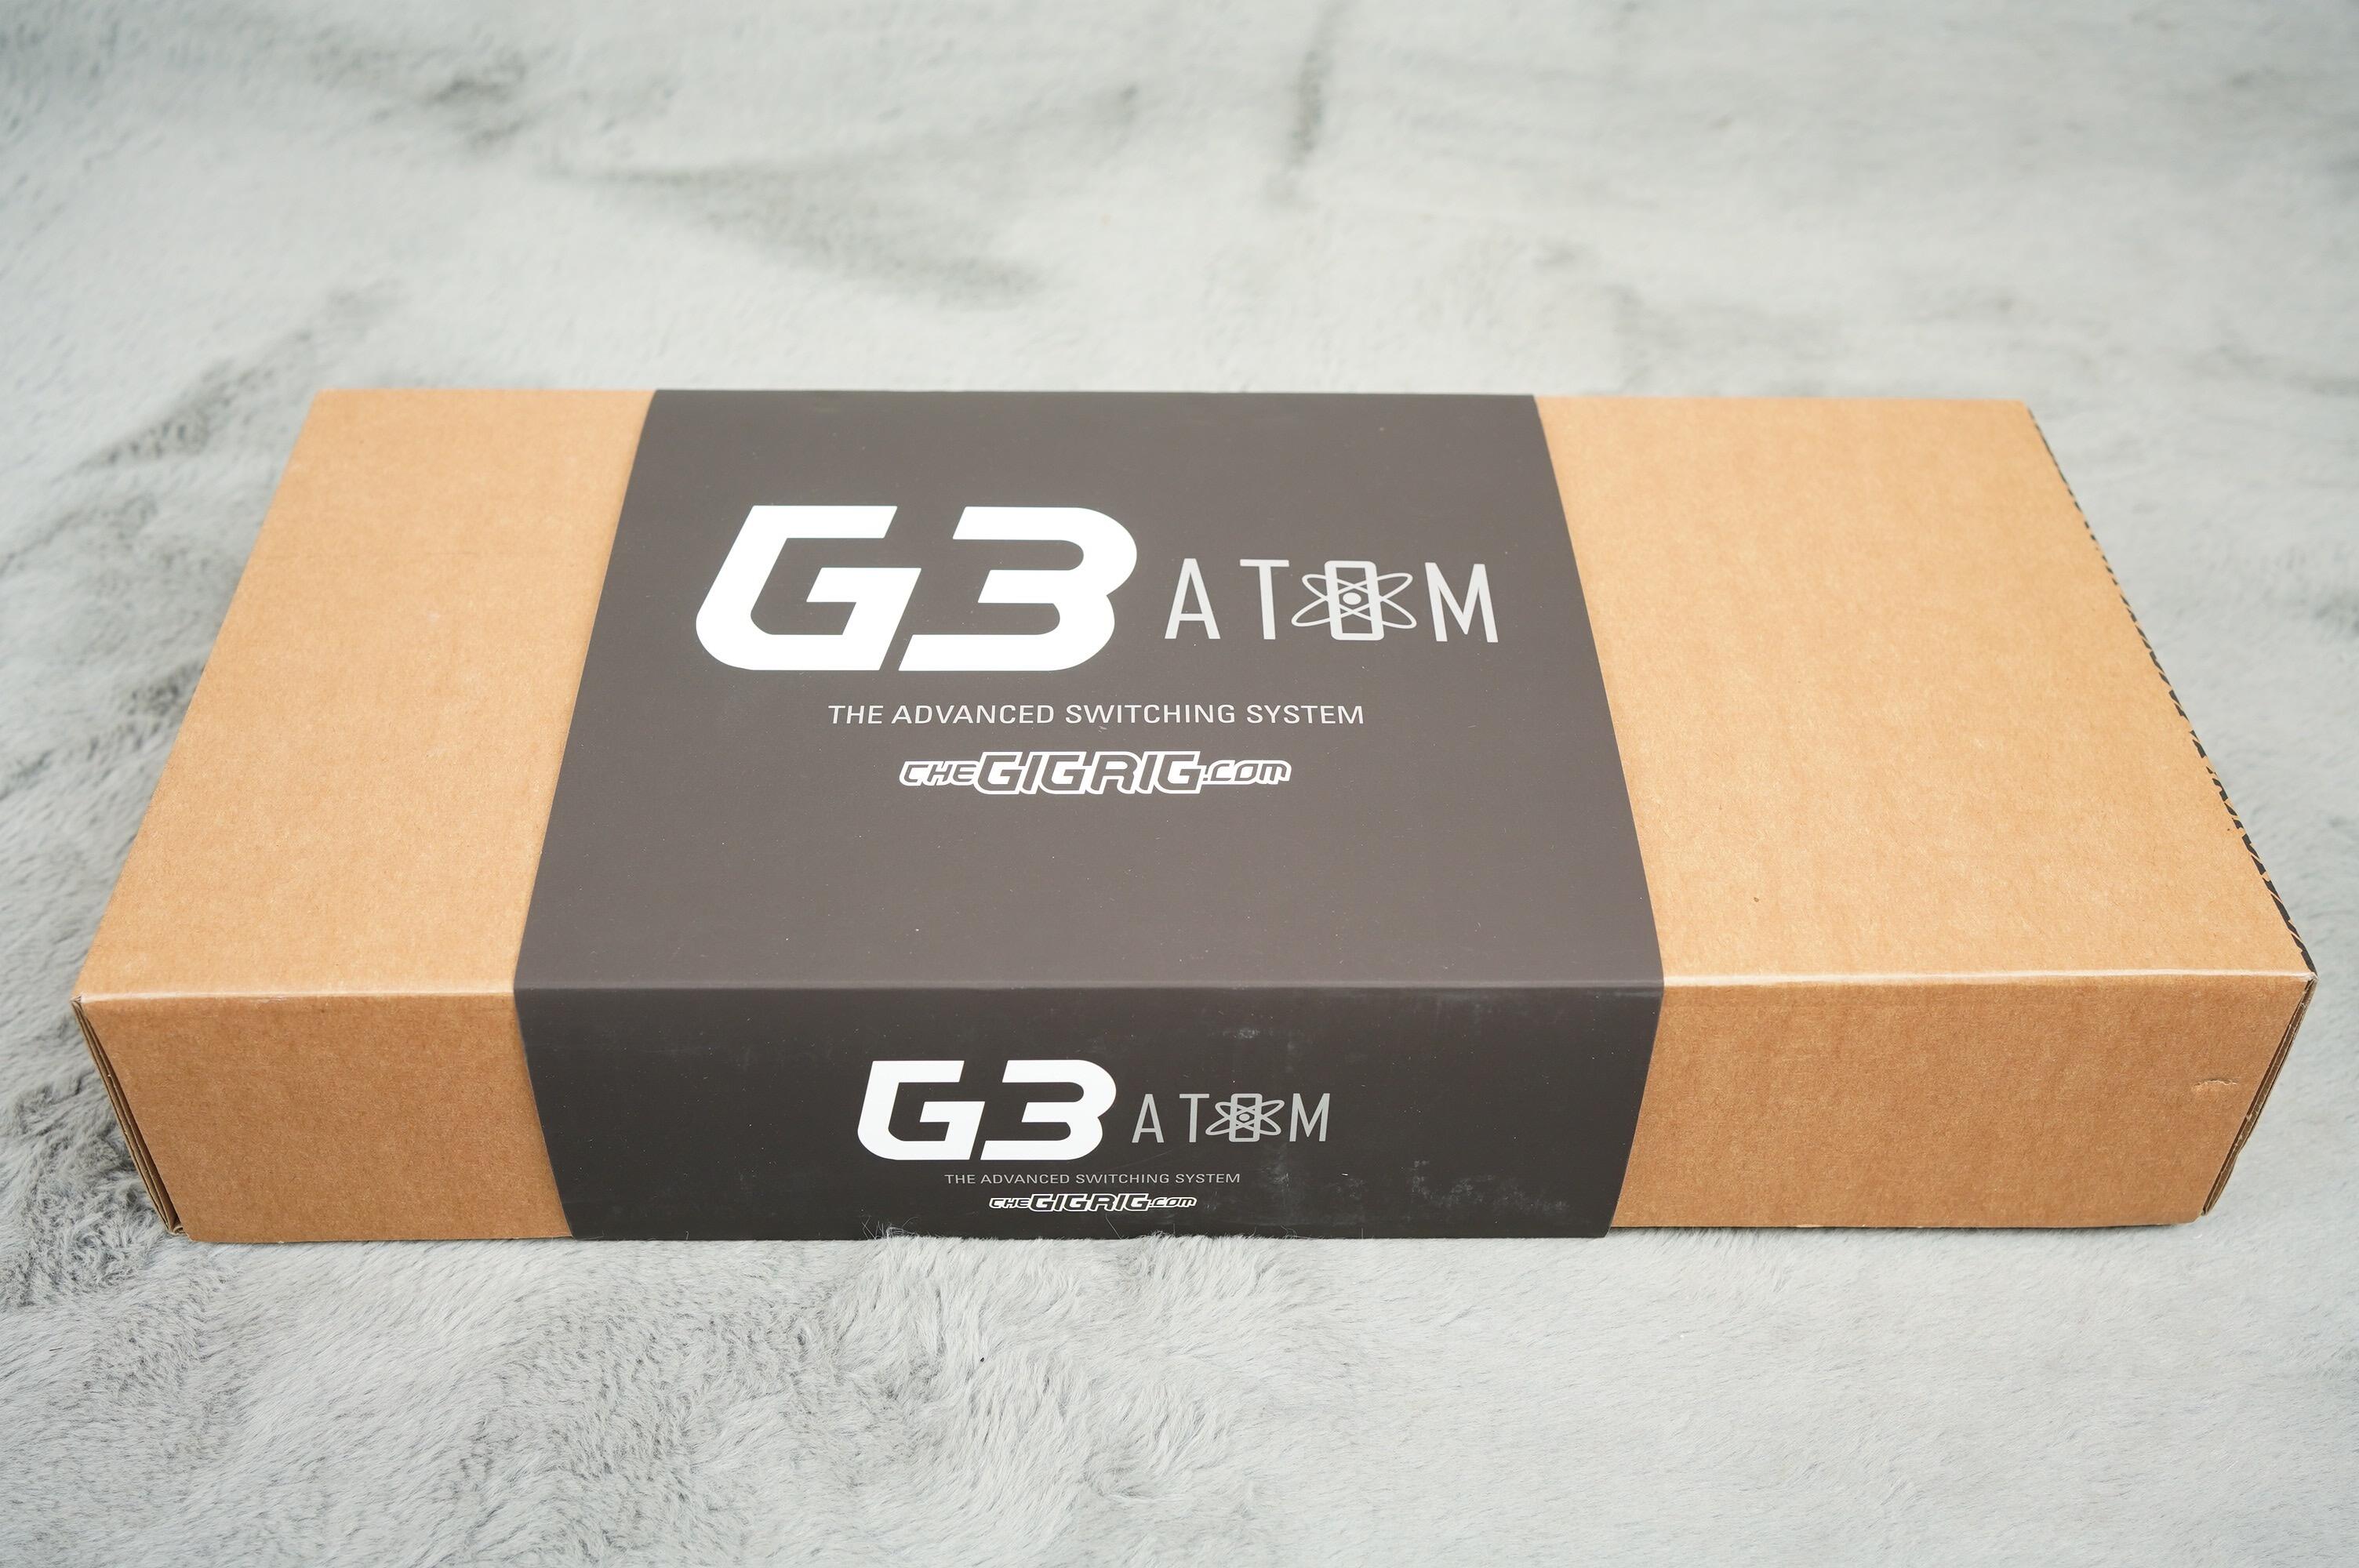 Gigrig G3 Atom